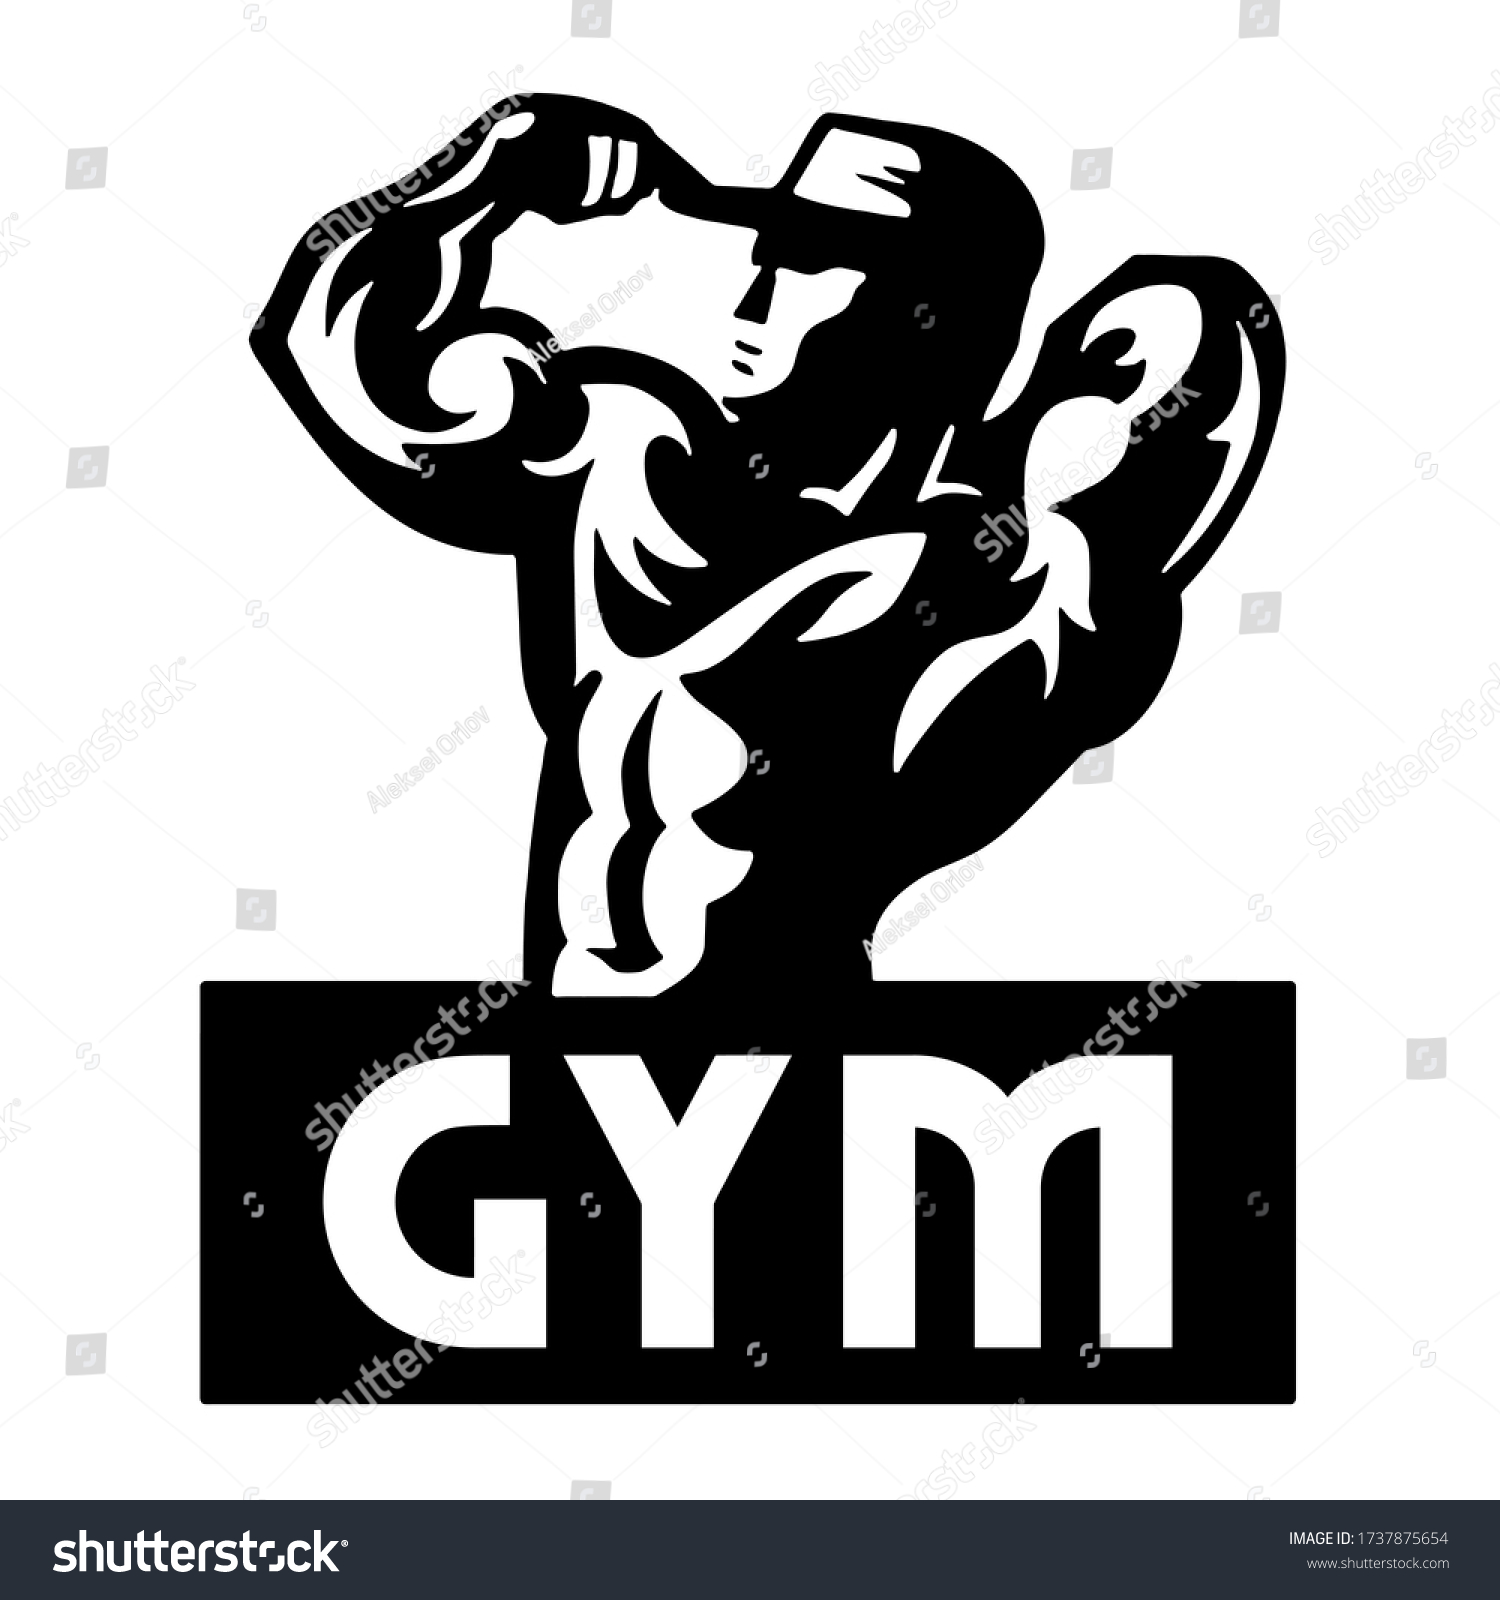 Bodybuilder Muscular Body Cartoon Illustration Stock Illustration ...